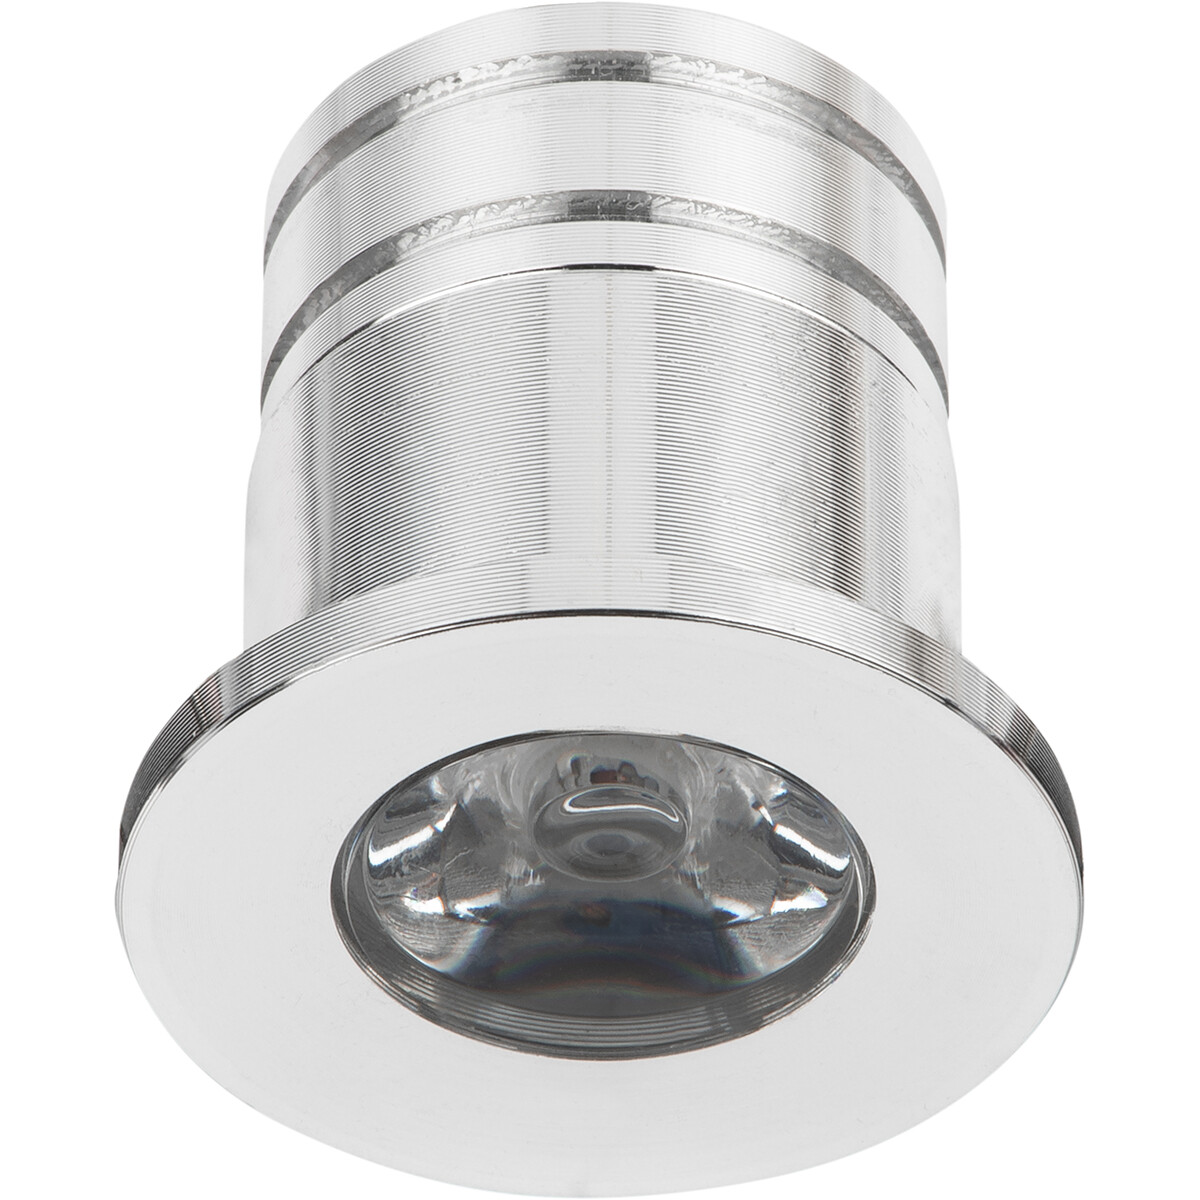 LED Veranda Spot Verlichting - 3W - Warm Wit 3000K - Inbouw - Dimbaar - Rond - Mat Zilver - Aluminiu